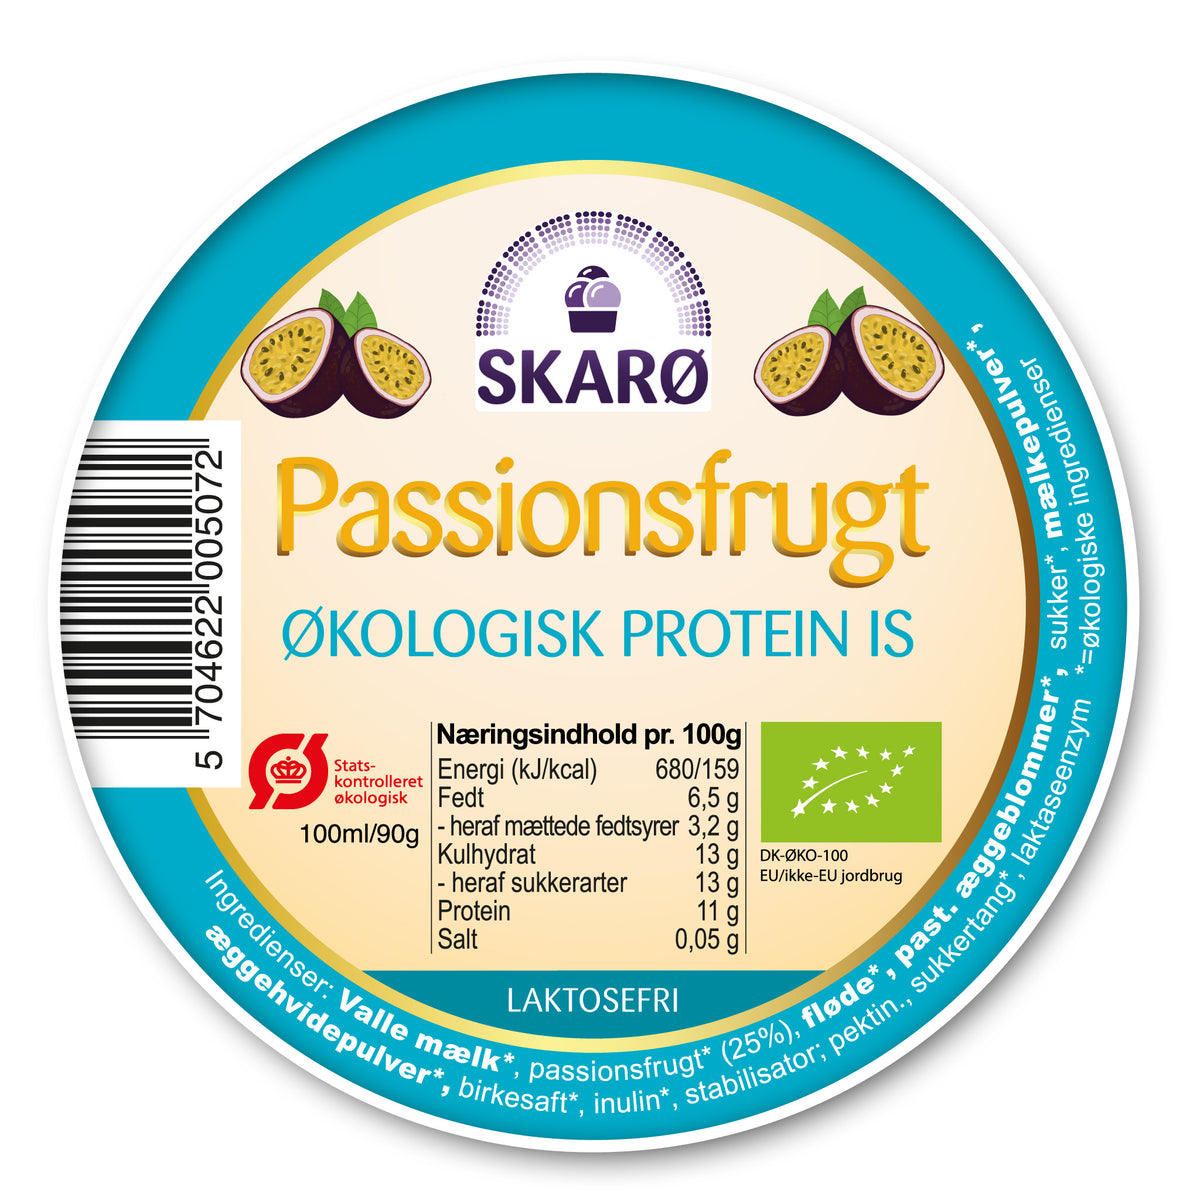 Økologisk Proteinis med Passionsfrugt fra Skarø